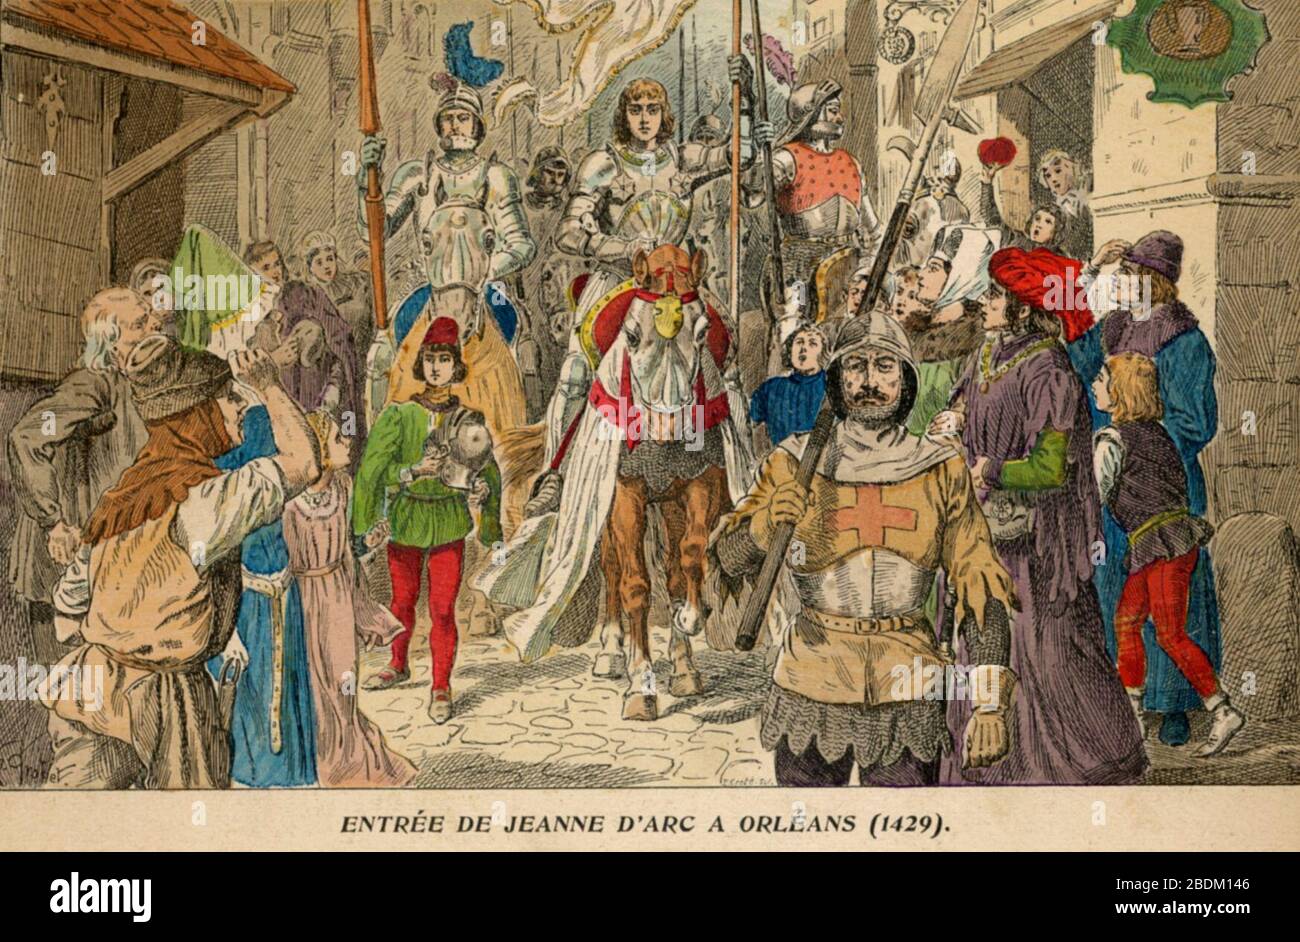 H. Grobet - Entrée de Jeanne d'Arc à Orléans (1429). Stock Photo